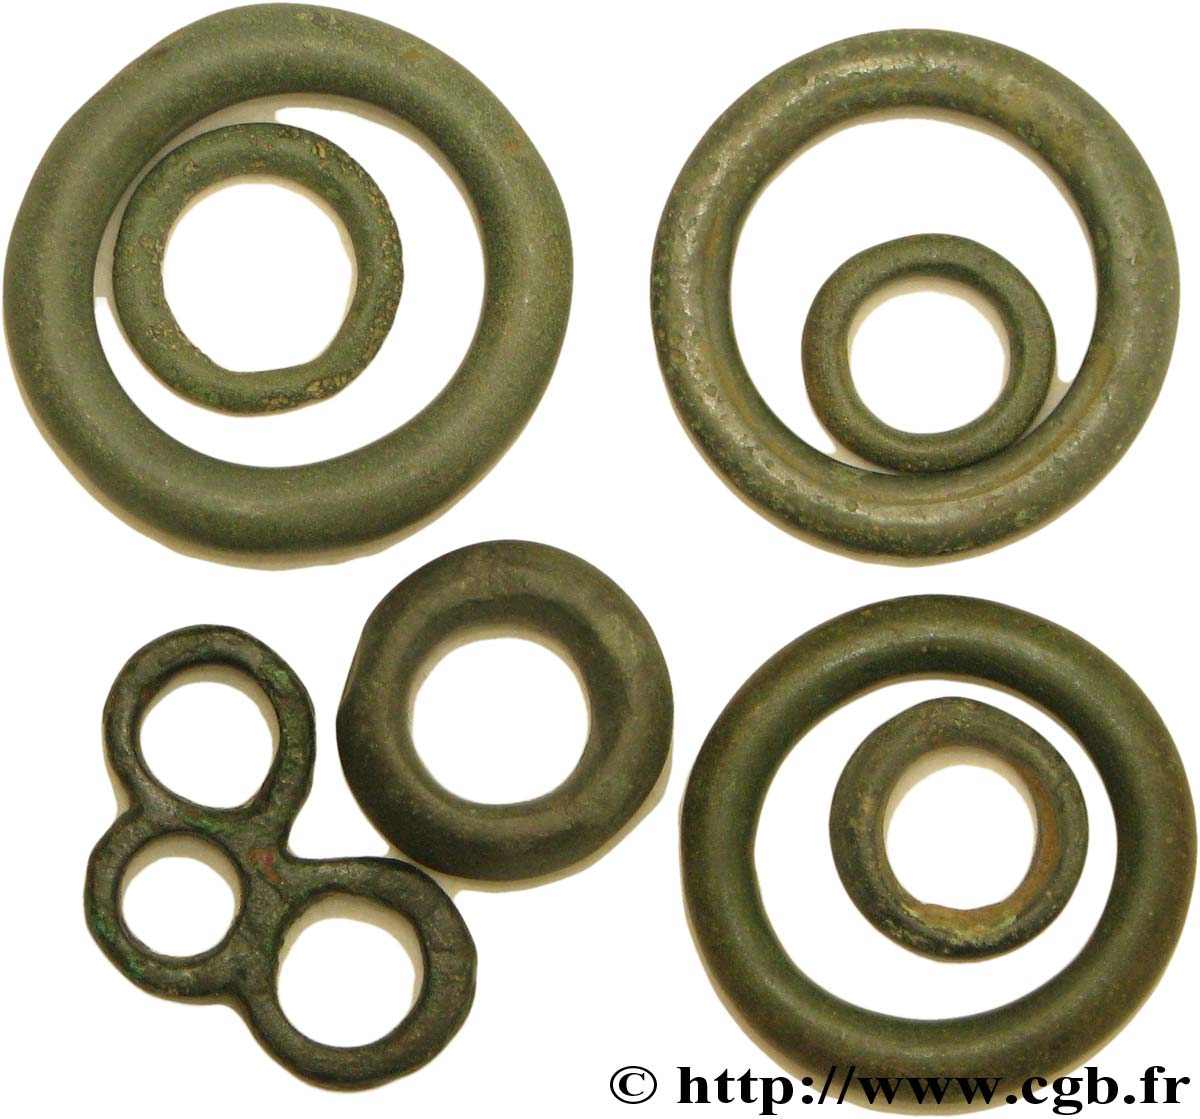  ROUELLE  RAGELD Lot de 8 rouelles, anneaux ou perles en bronze lot